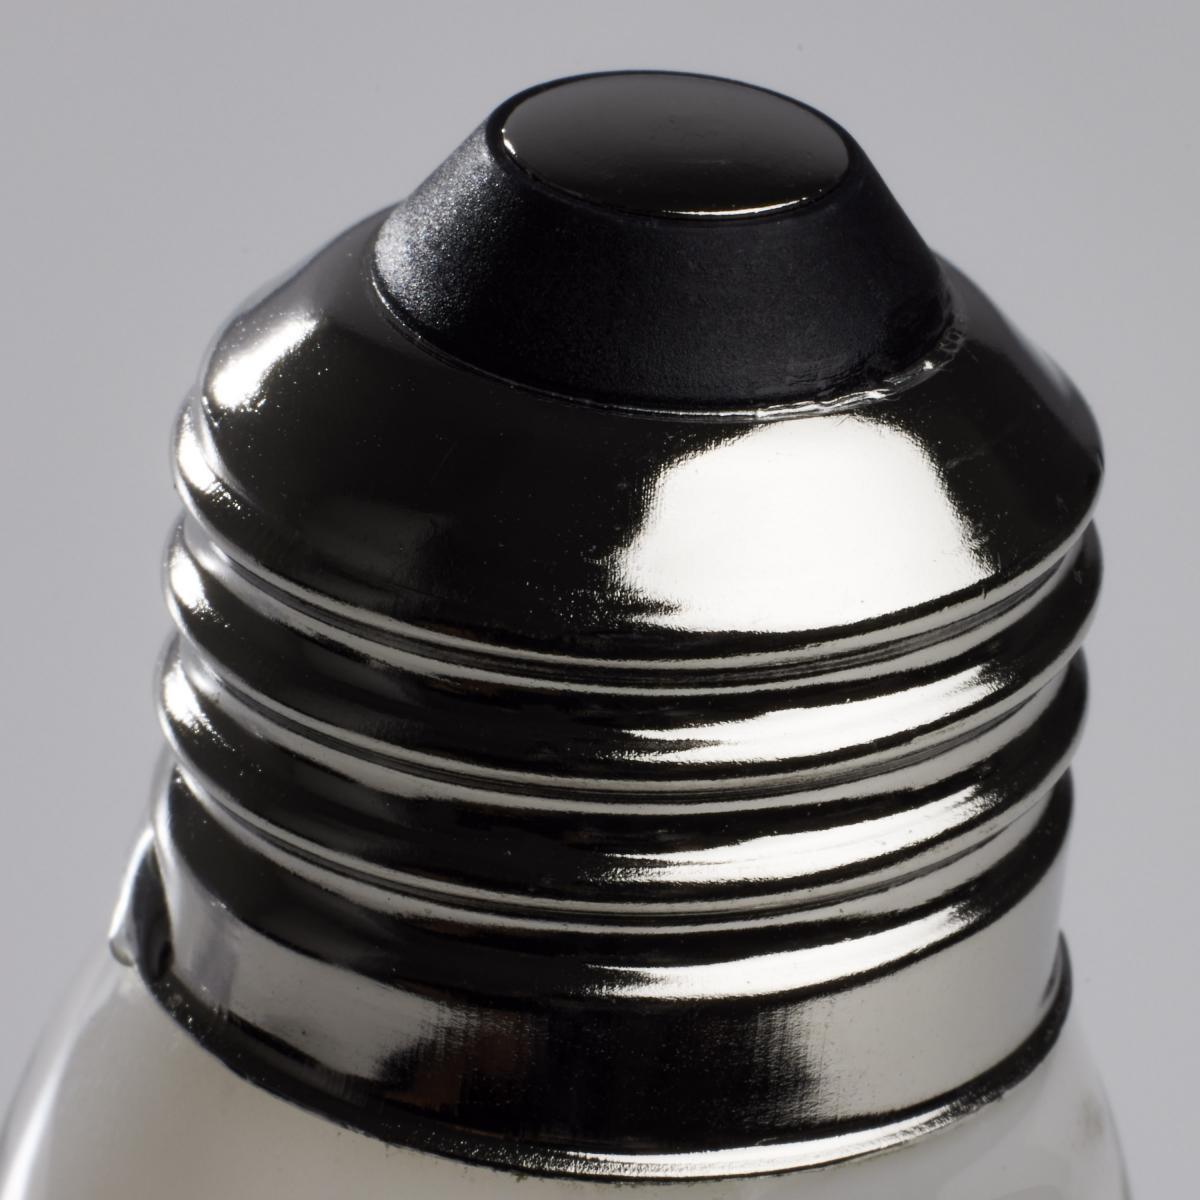 G40 LED Globe Bulb, 8 Watt, 800 Lumens, 3000K, E26 Medium Base, Frosted Finish - Bees Lighting